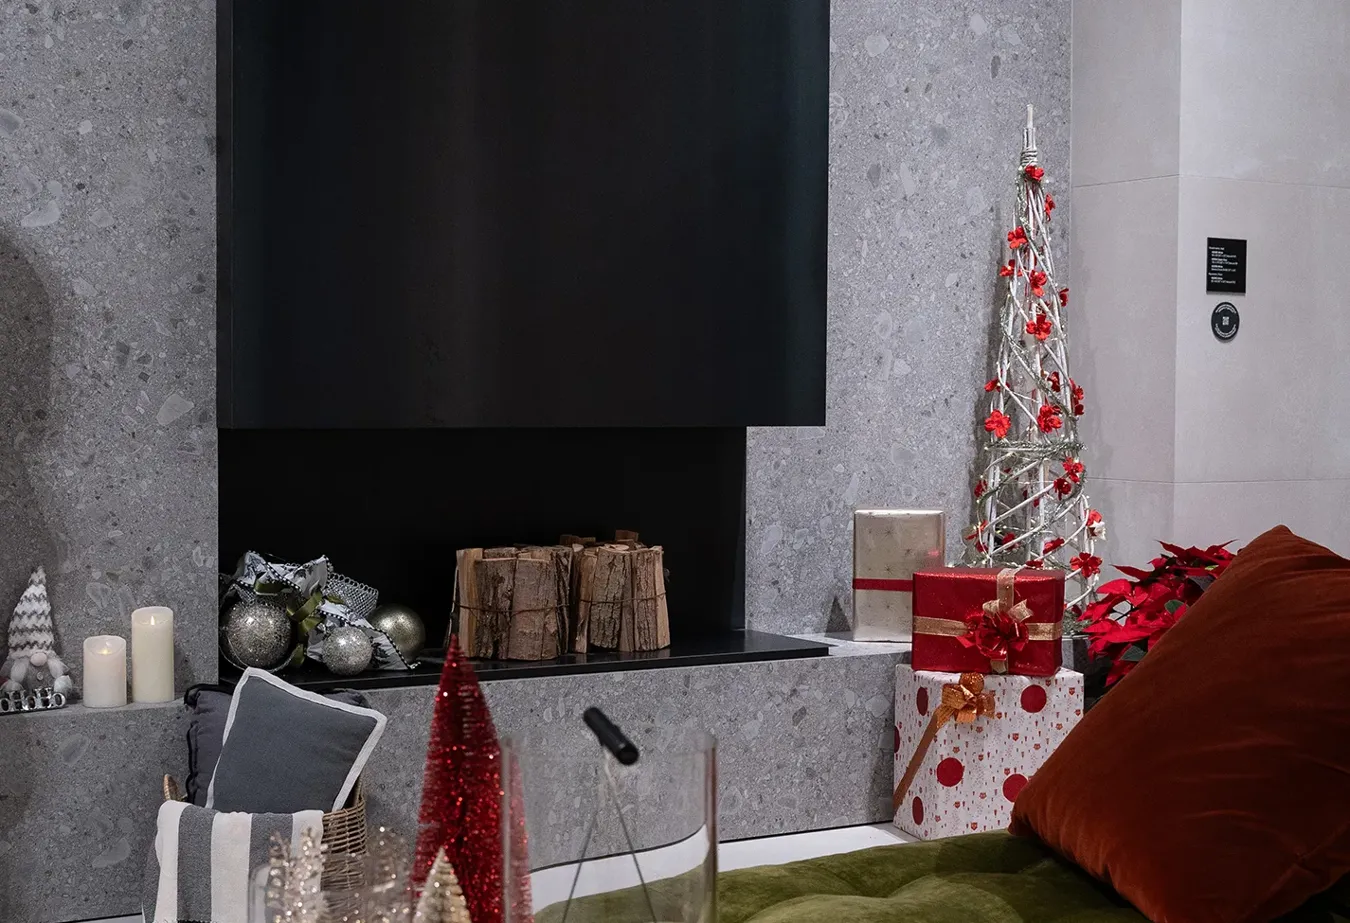 Festliches Wohnzimmer mit Kamin, Noord-weißen Fliesen und Weihnachtsdekoration in Rot und Silber.